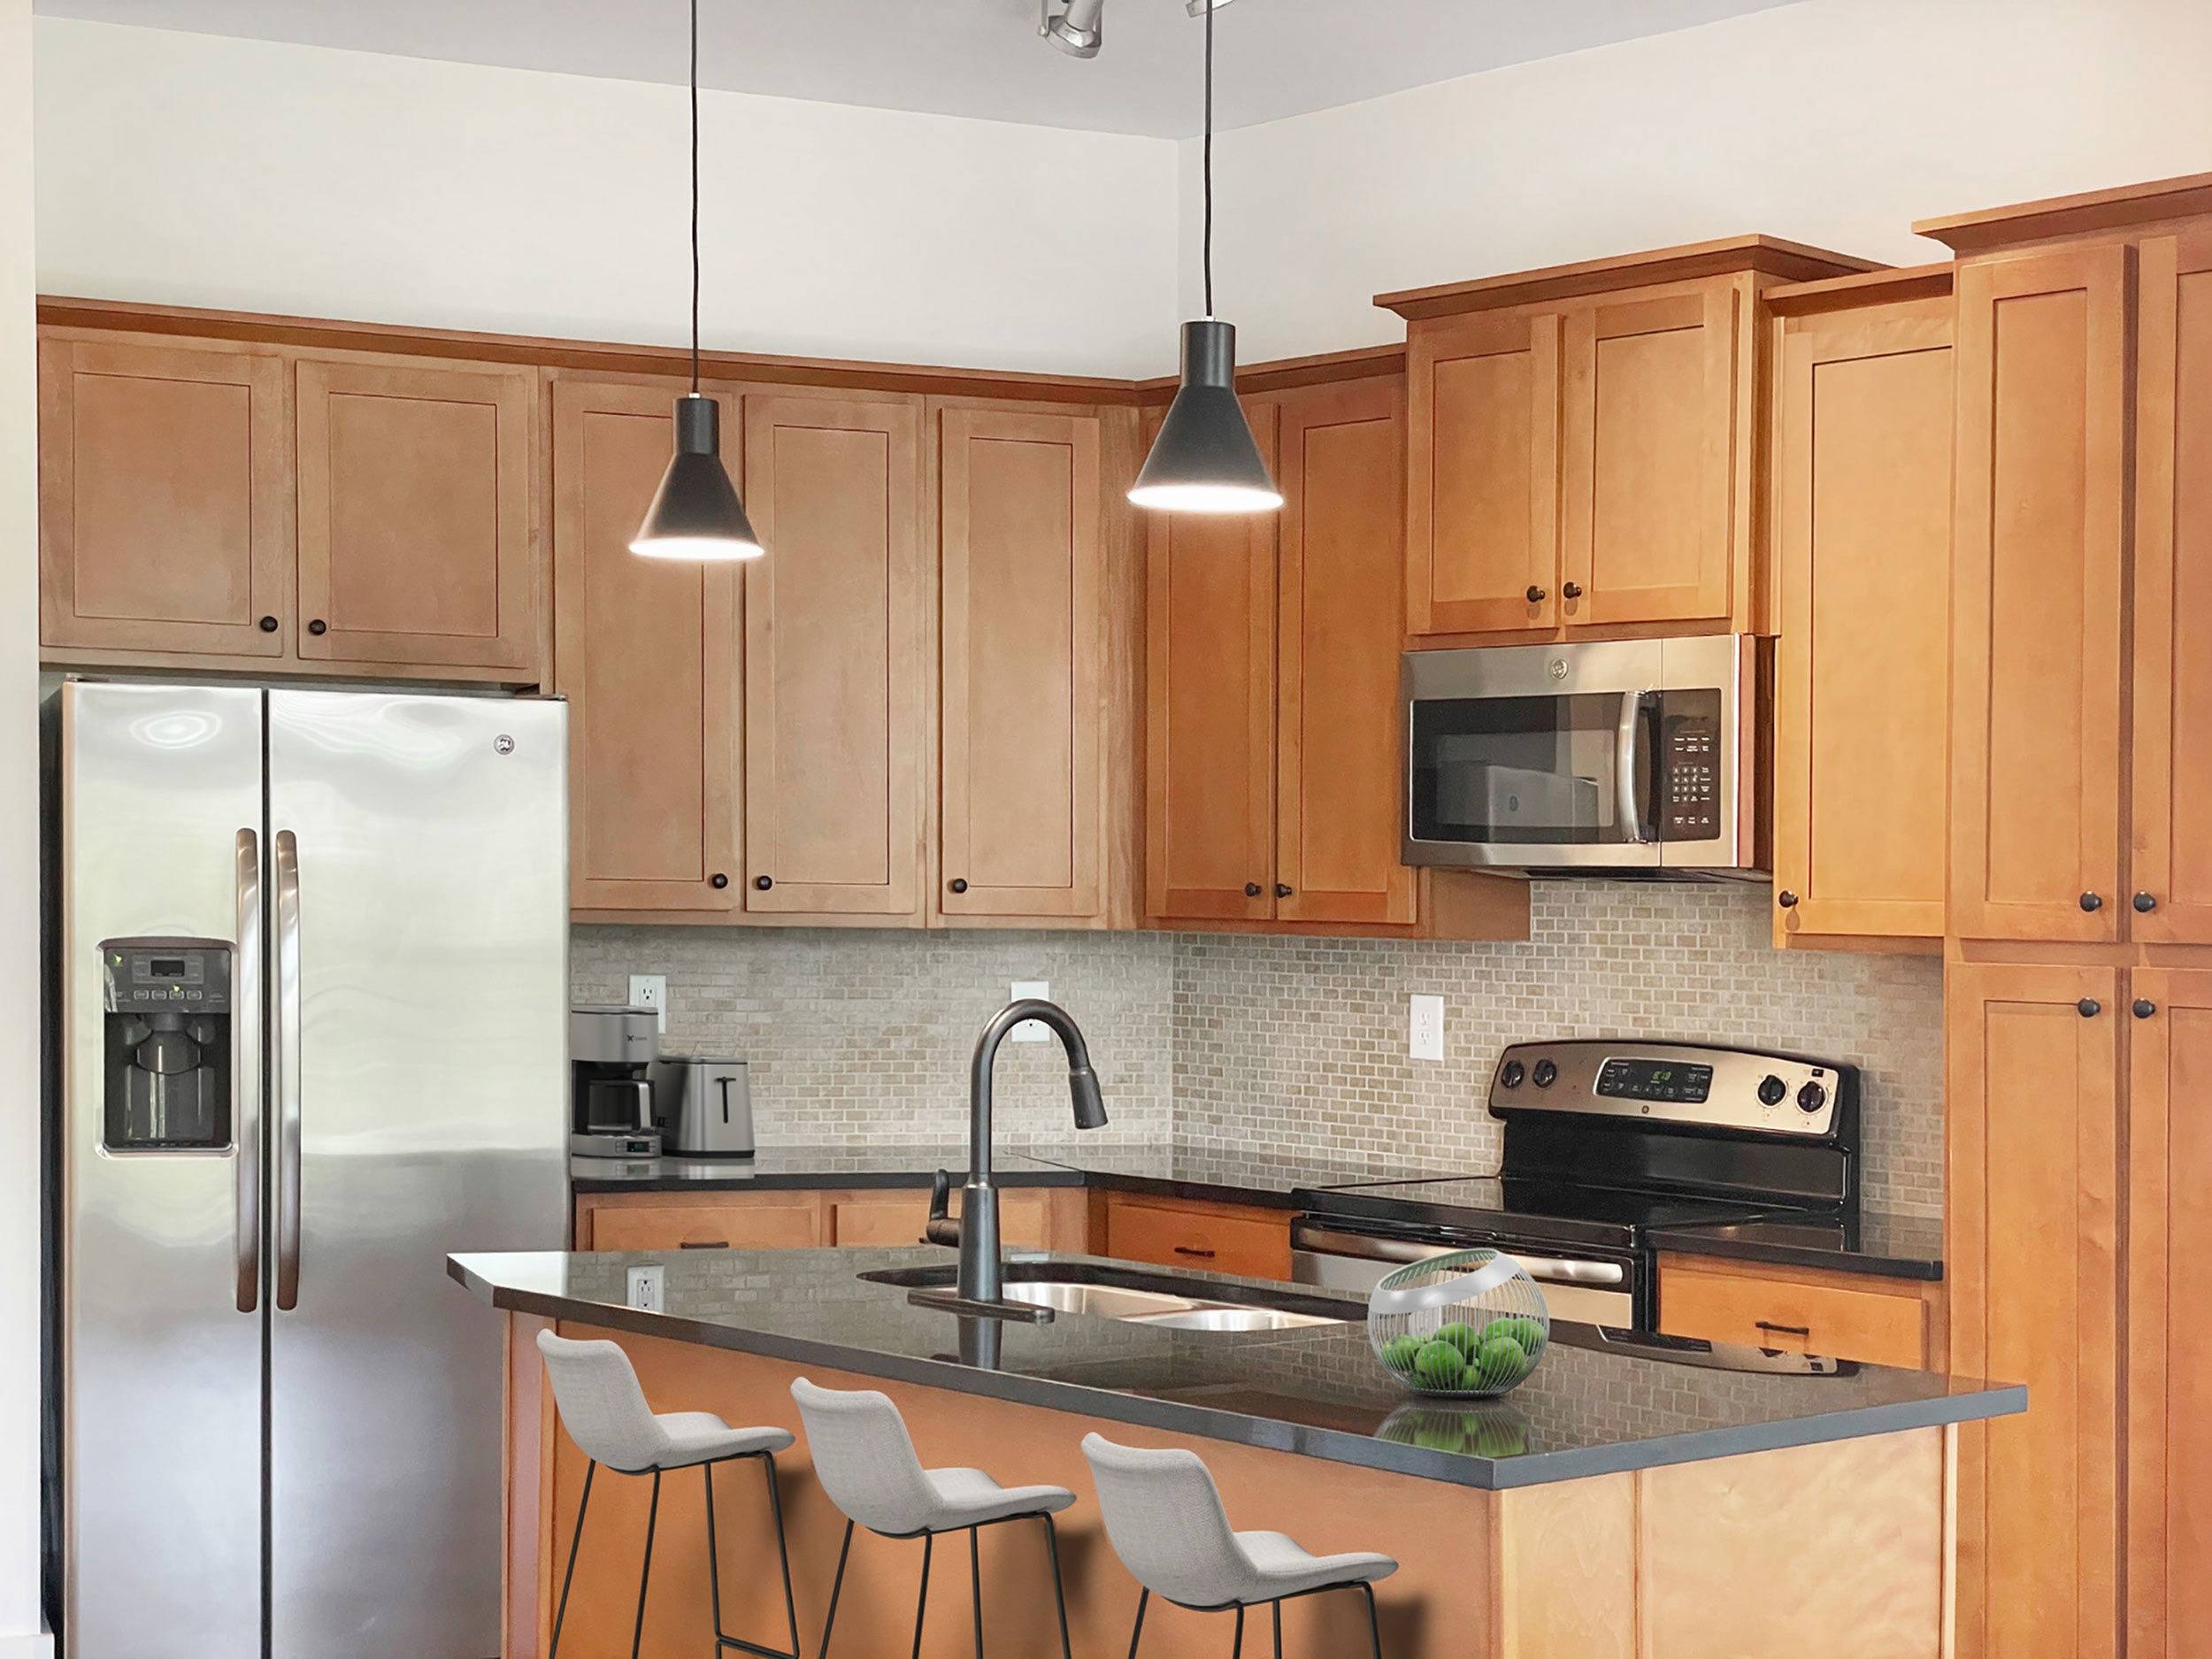 RA6 renovated kitchen | Apartments in Cary, NC | Lofts at Weston